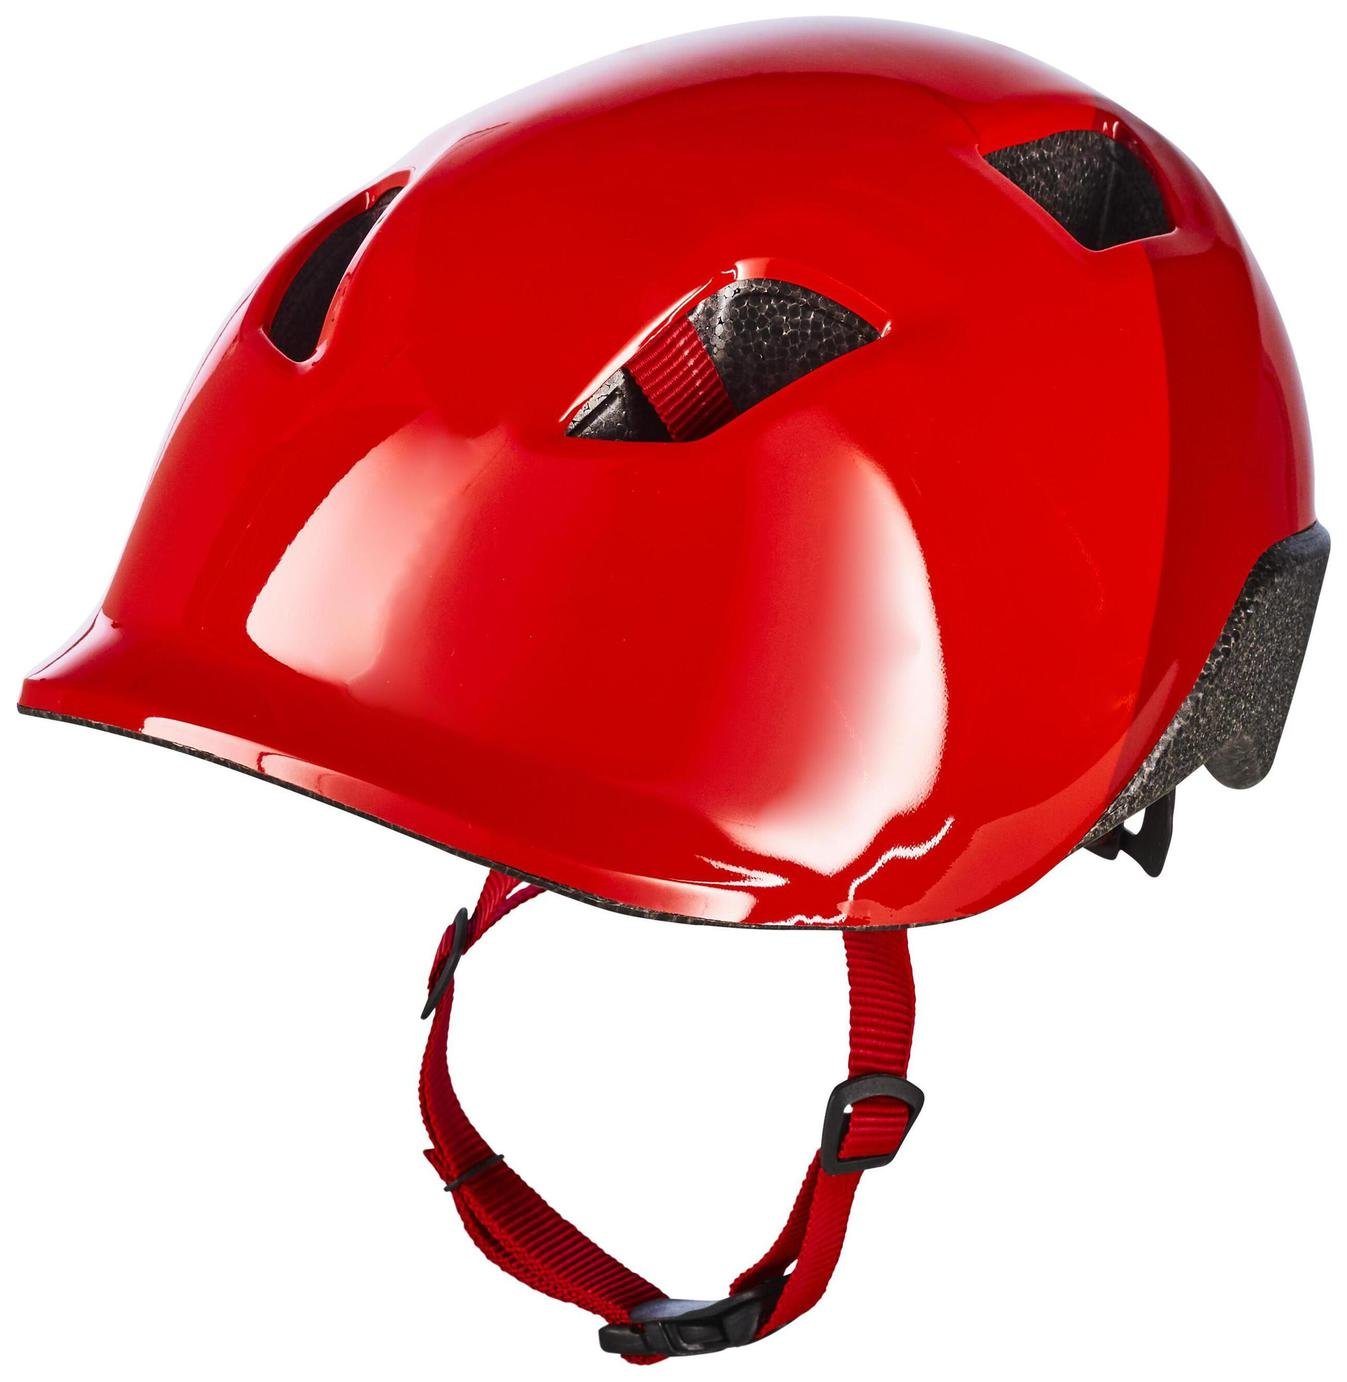 Decathlon Beginner Kids Bike Helmet - Red, 53-56cm